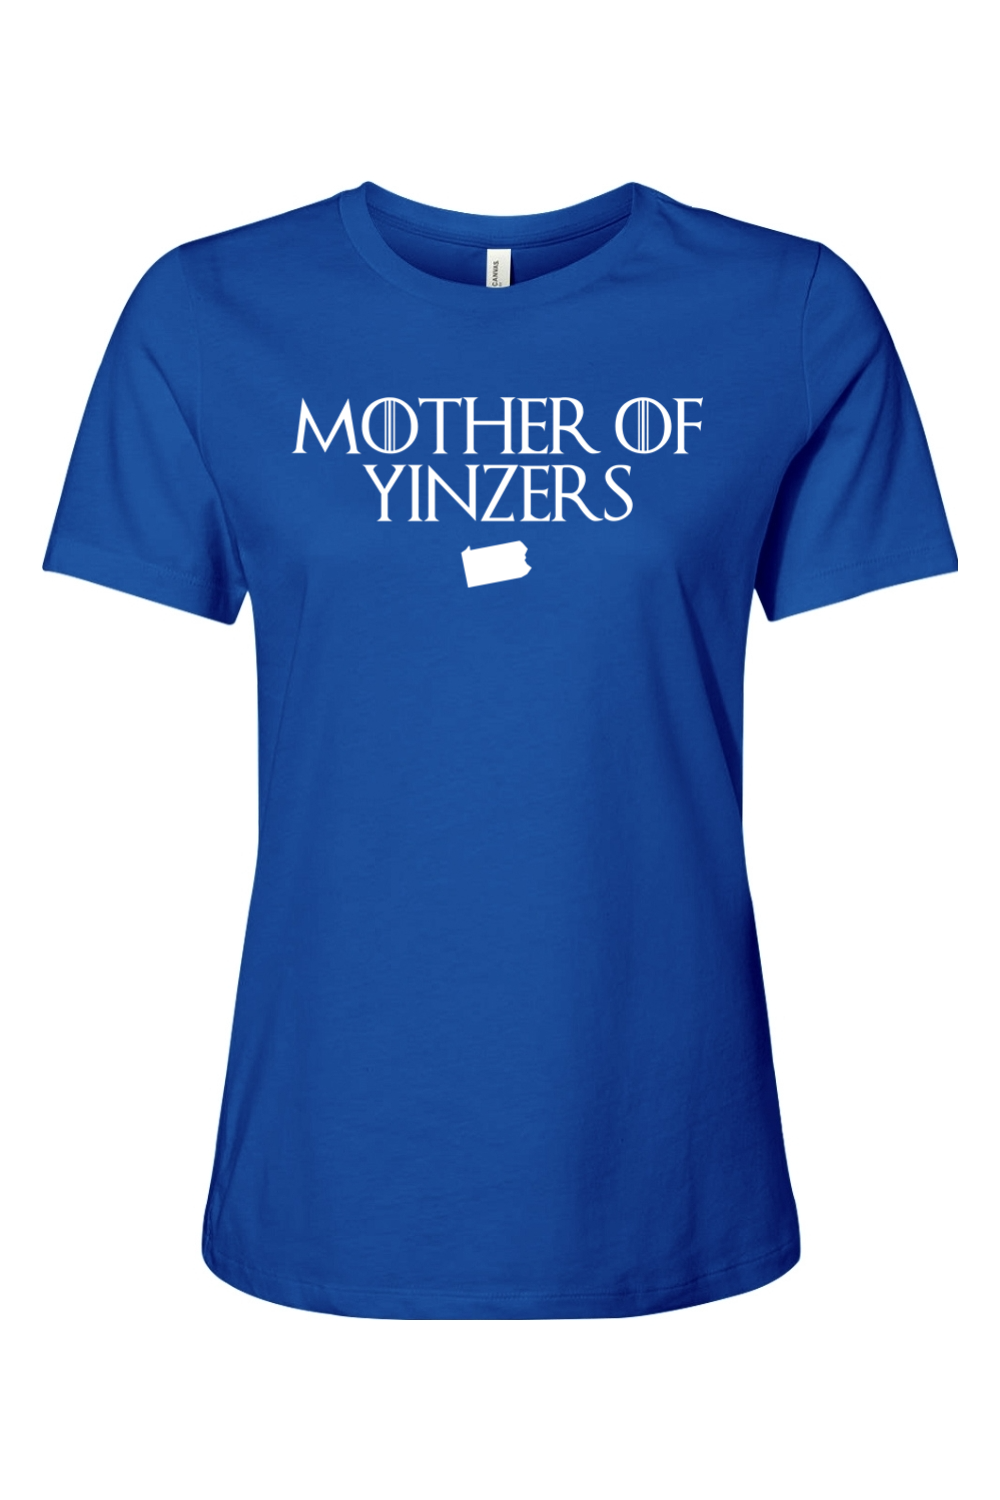 Mother of Yinzers - Ladies Tee - Yinzylvania